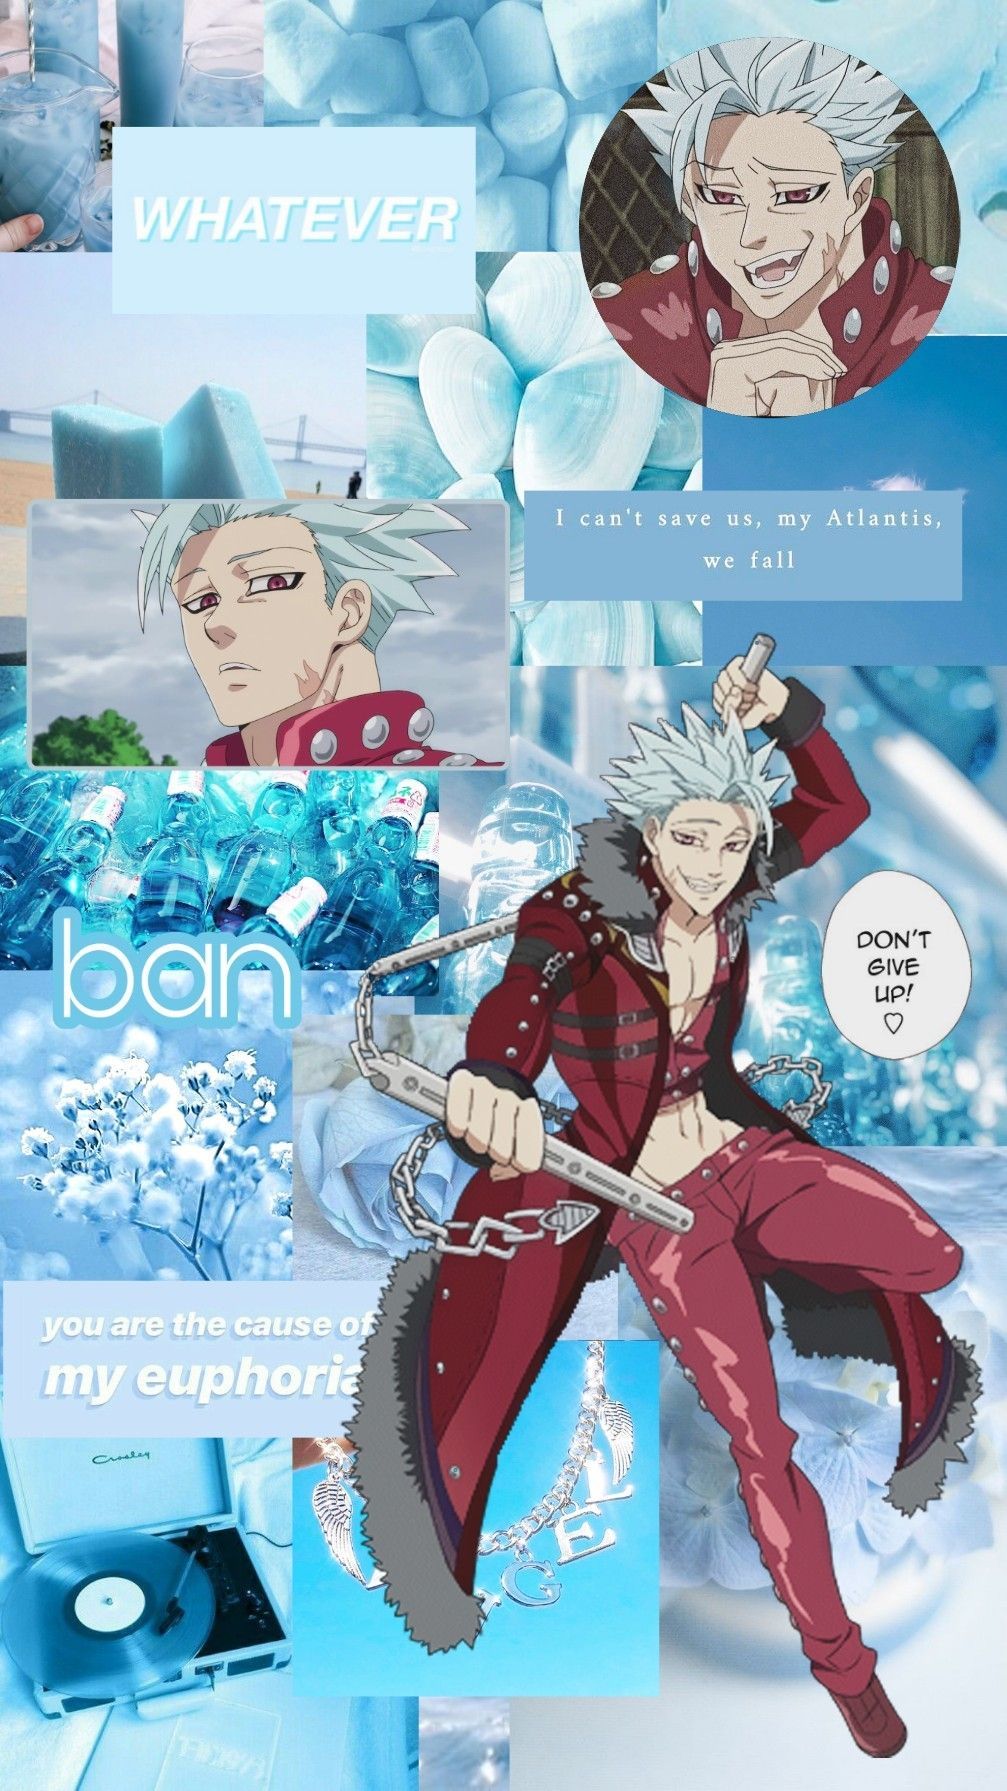  Die 7 Todsünden Hintergrundbild 1007x1791. Ban wallpaper Seven deadly sins. Seven deadly sins anime, Anime, Seven deadly sins